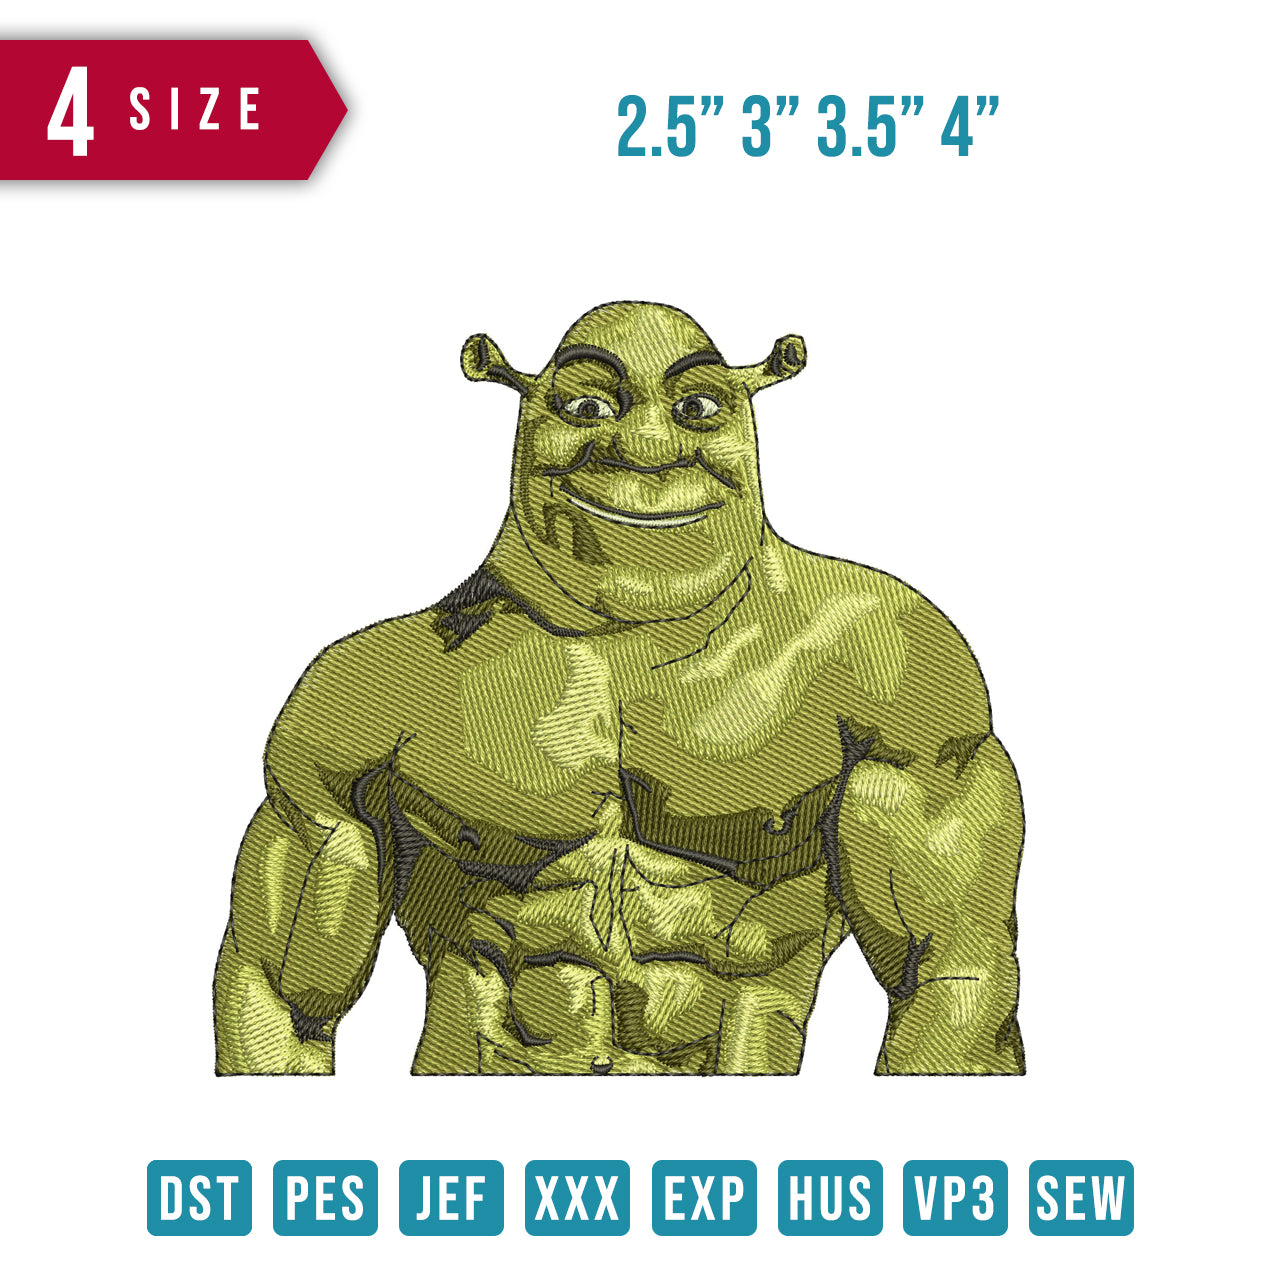 Shrek Muscle